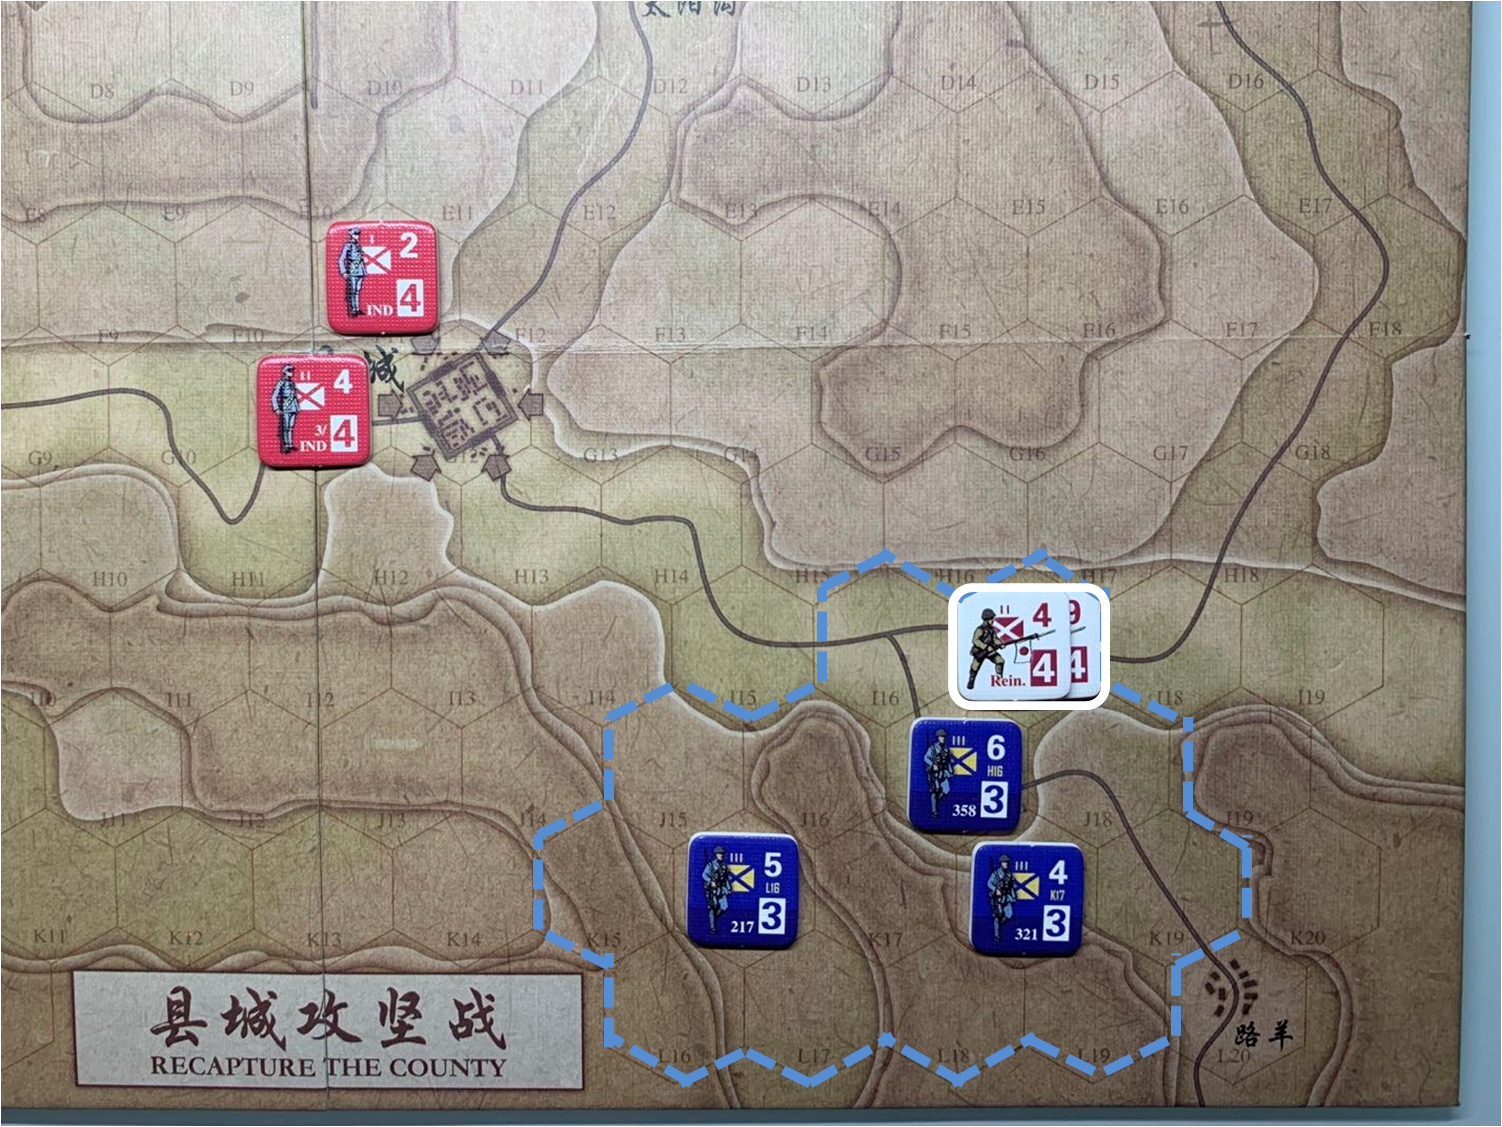 第二回合路羊方向日军增援部队（I17）对于移动命令3的执行结果